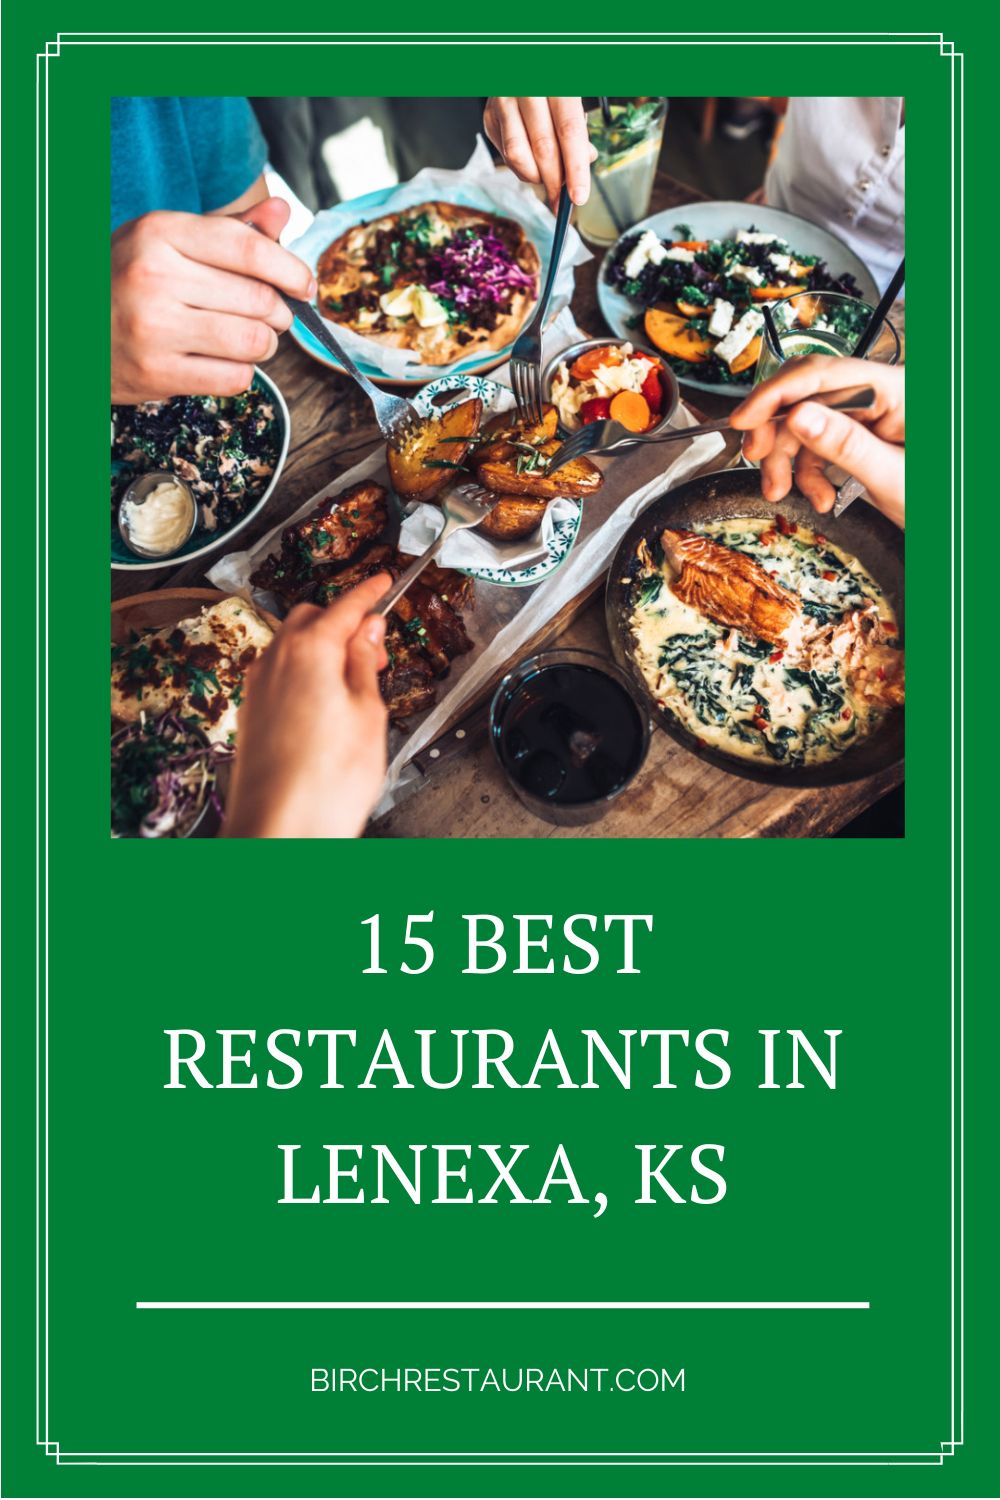  Best Restaurants in Lenexa